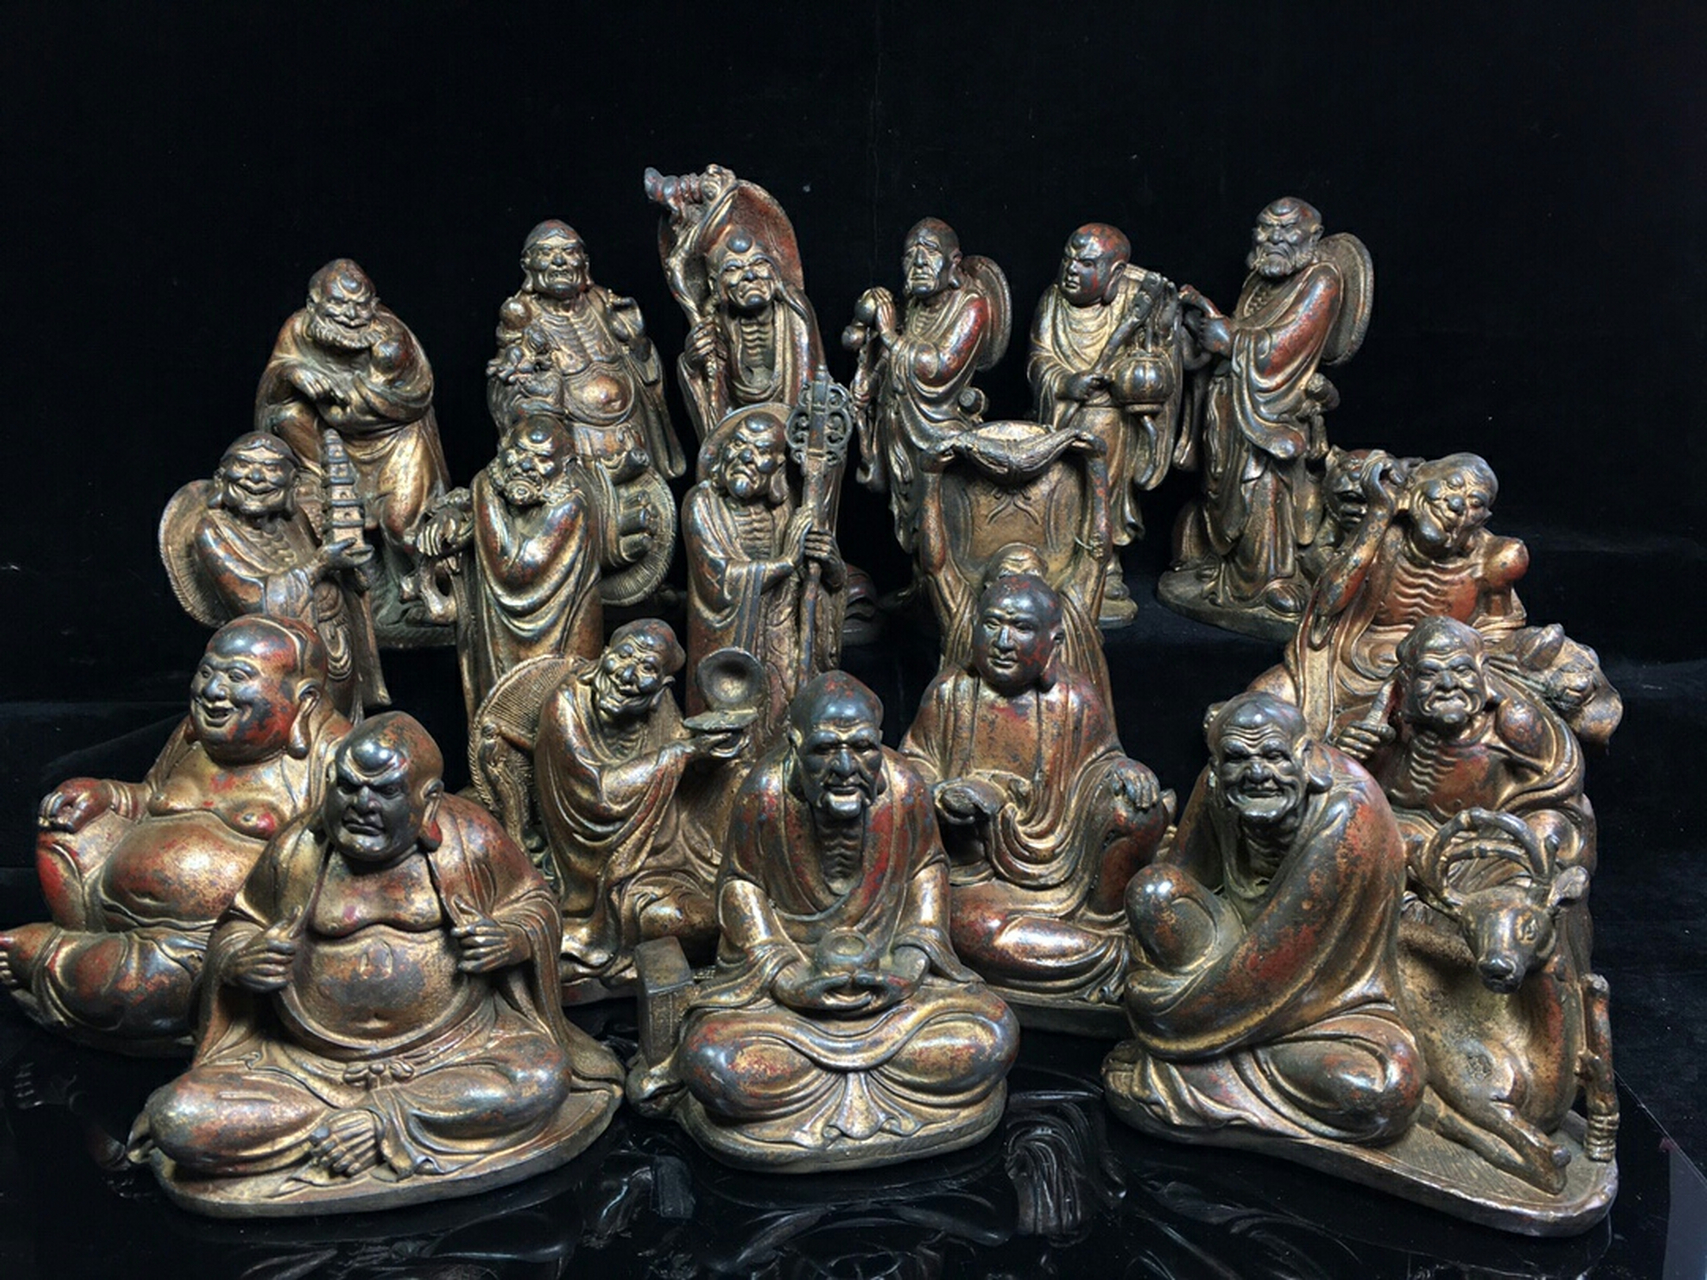 藏传佛教铜十八罗汉佛像,工艺精美,造型独特,尺寸高的是20cm左右,低的